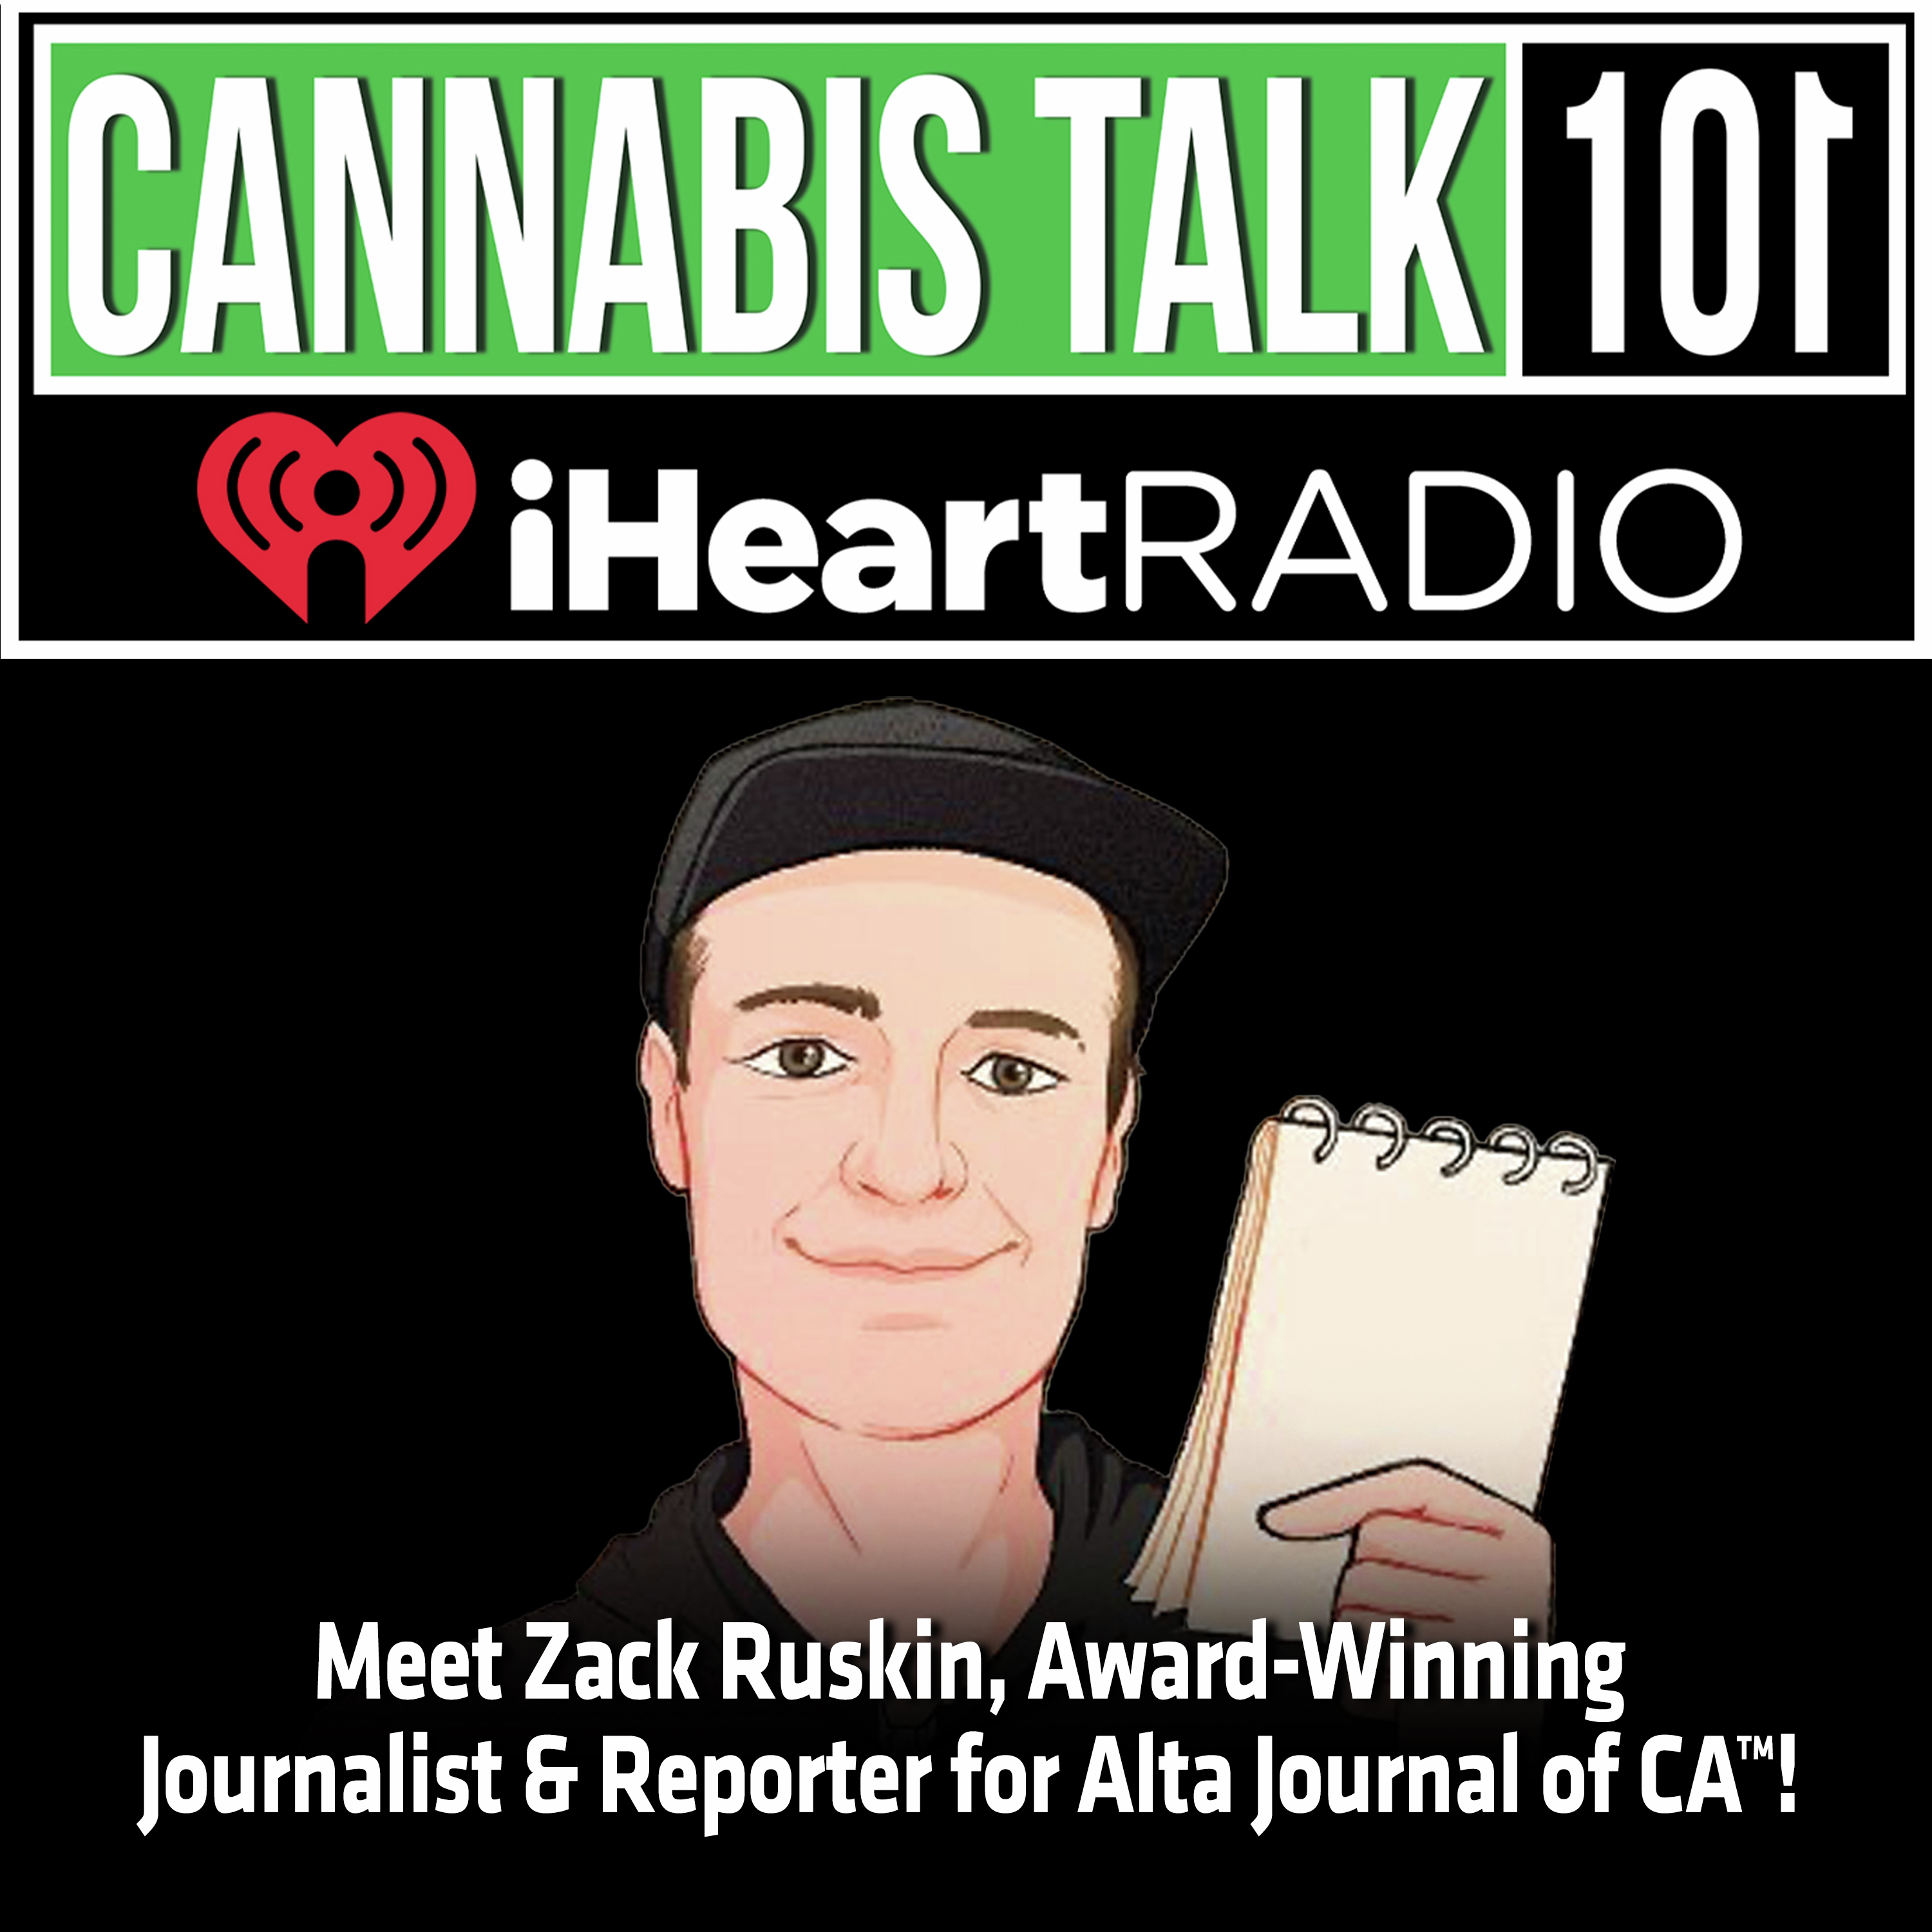 Meet Zack Ruskin, Award-Winning Journalist/Reporter for Alta Journal of CA™!